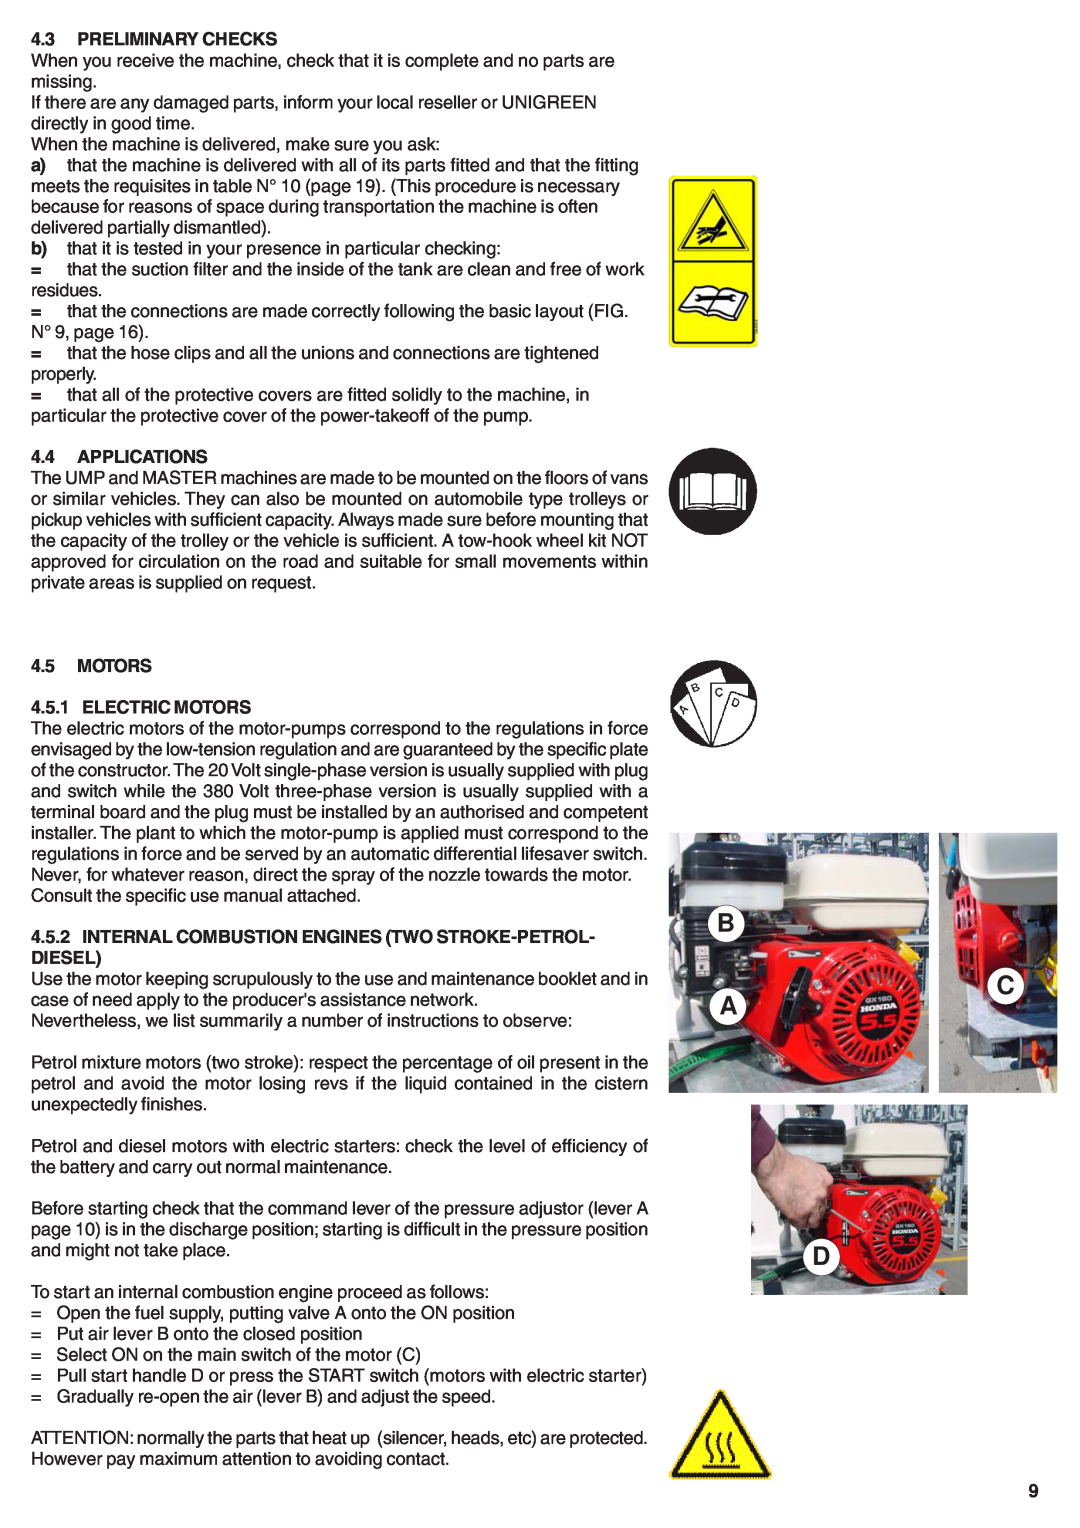 Unigreen 40, 50, 55, 20 manual B C A D, Preliminary Checks, Applications, MOTORS 4.5.1 ELECTRIC MOTORS 